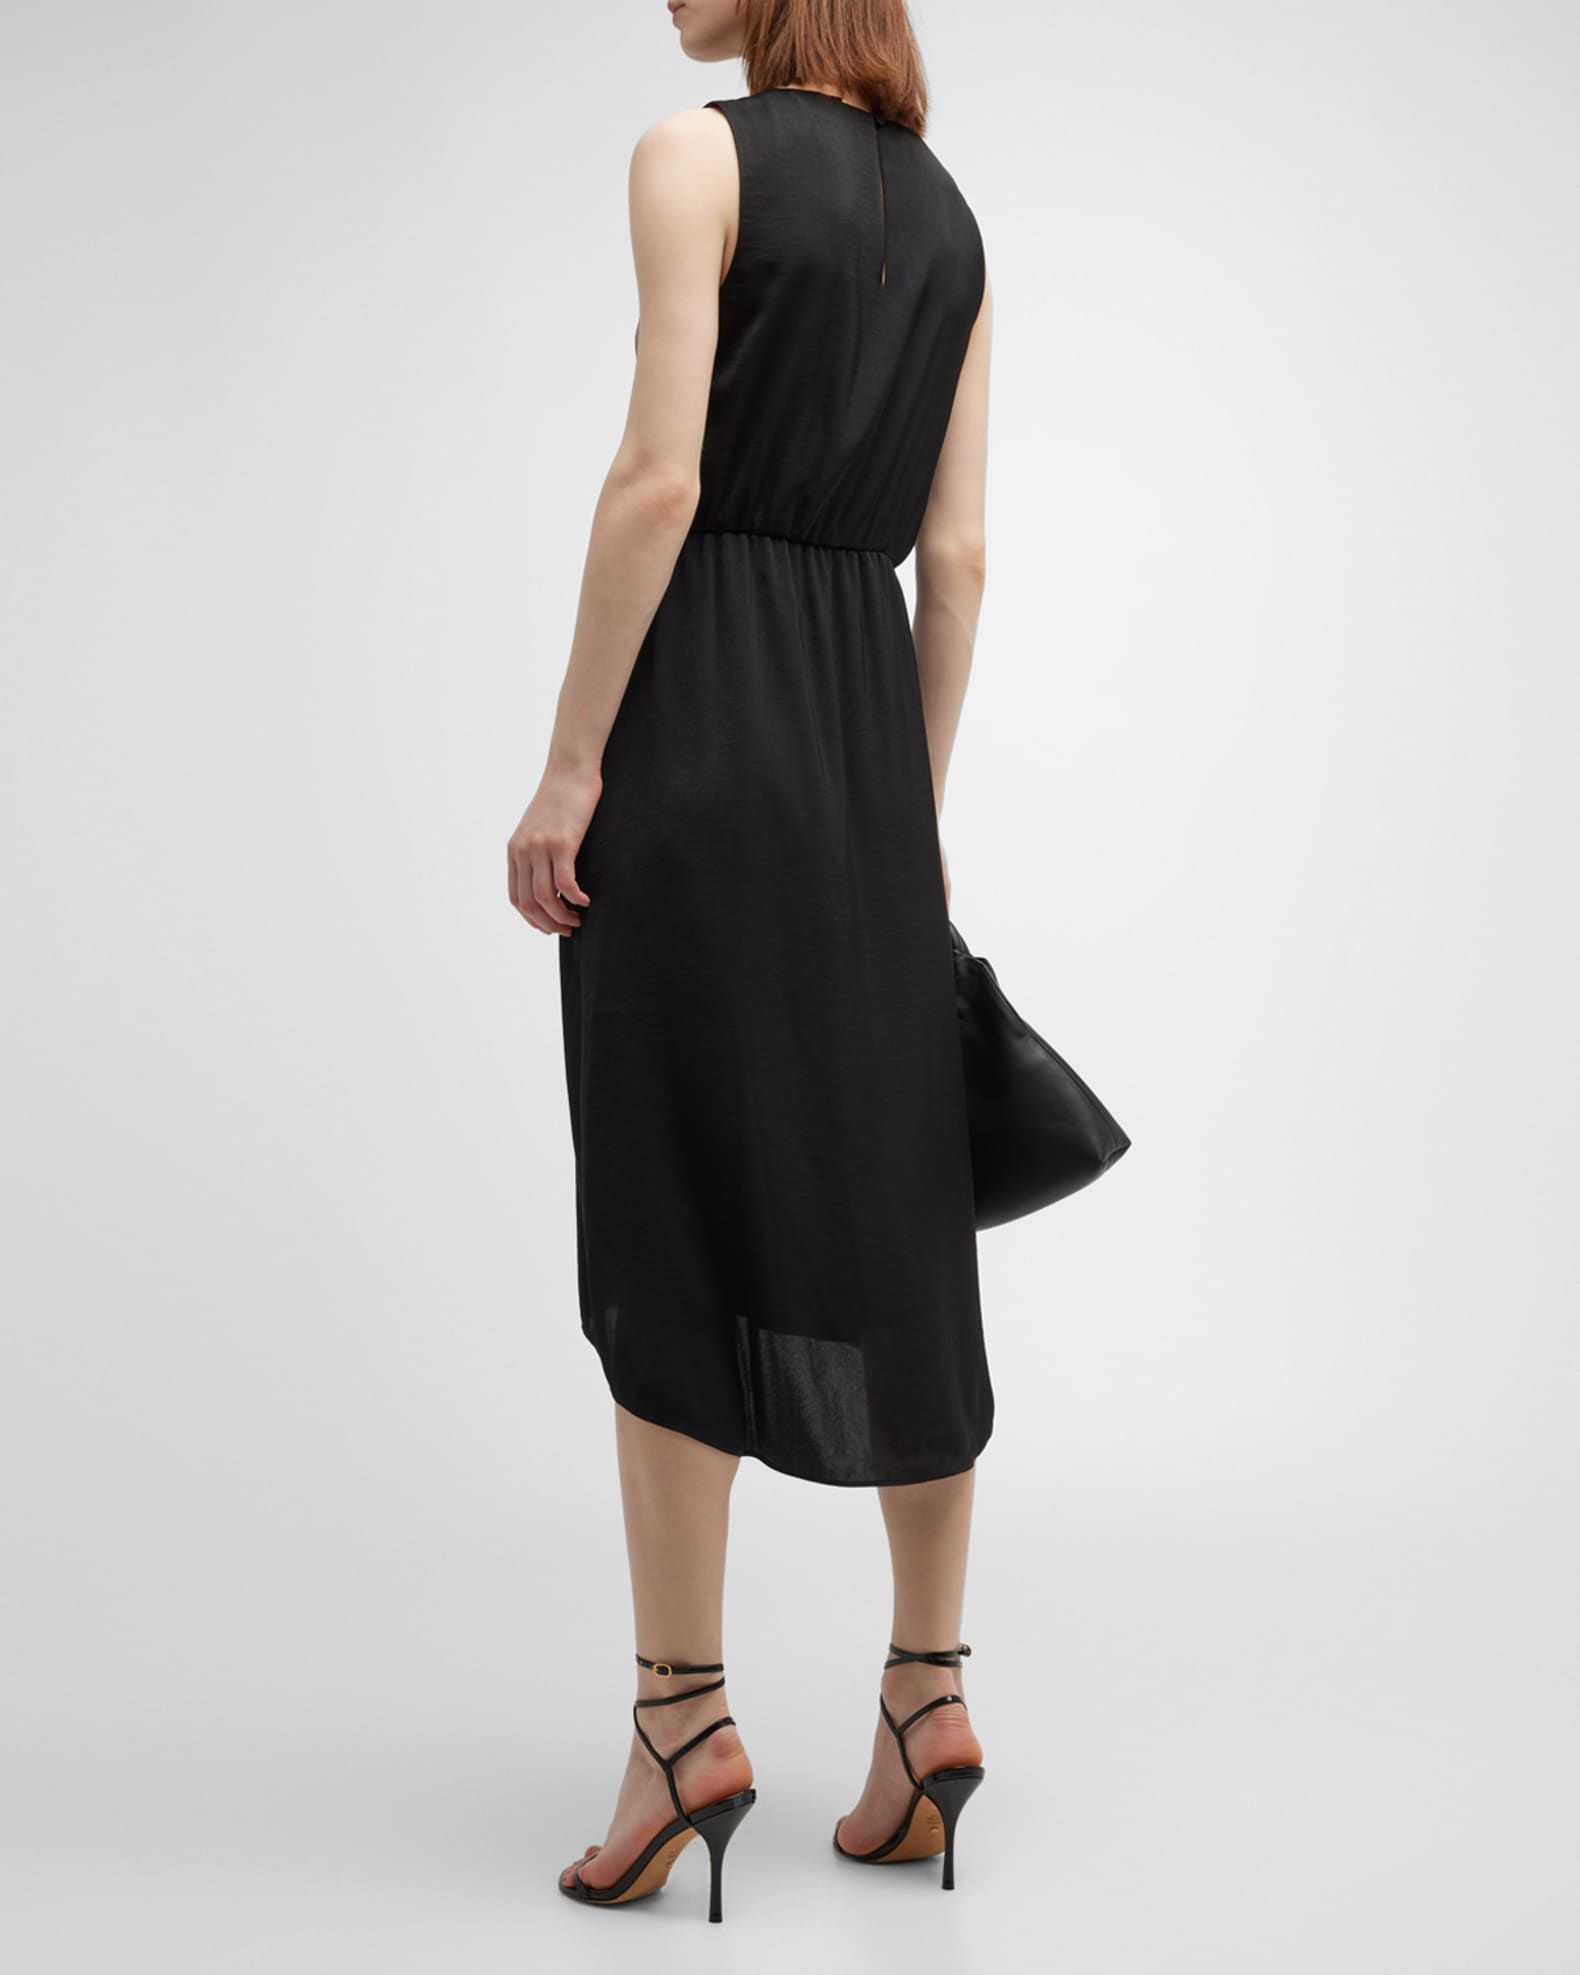 Donna Karan Jersey Side Twist Sheath Dress - Black - Medium